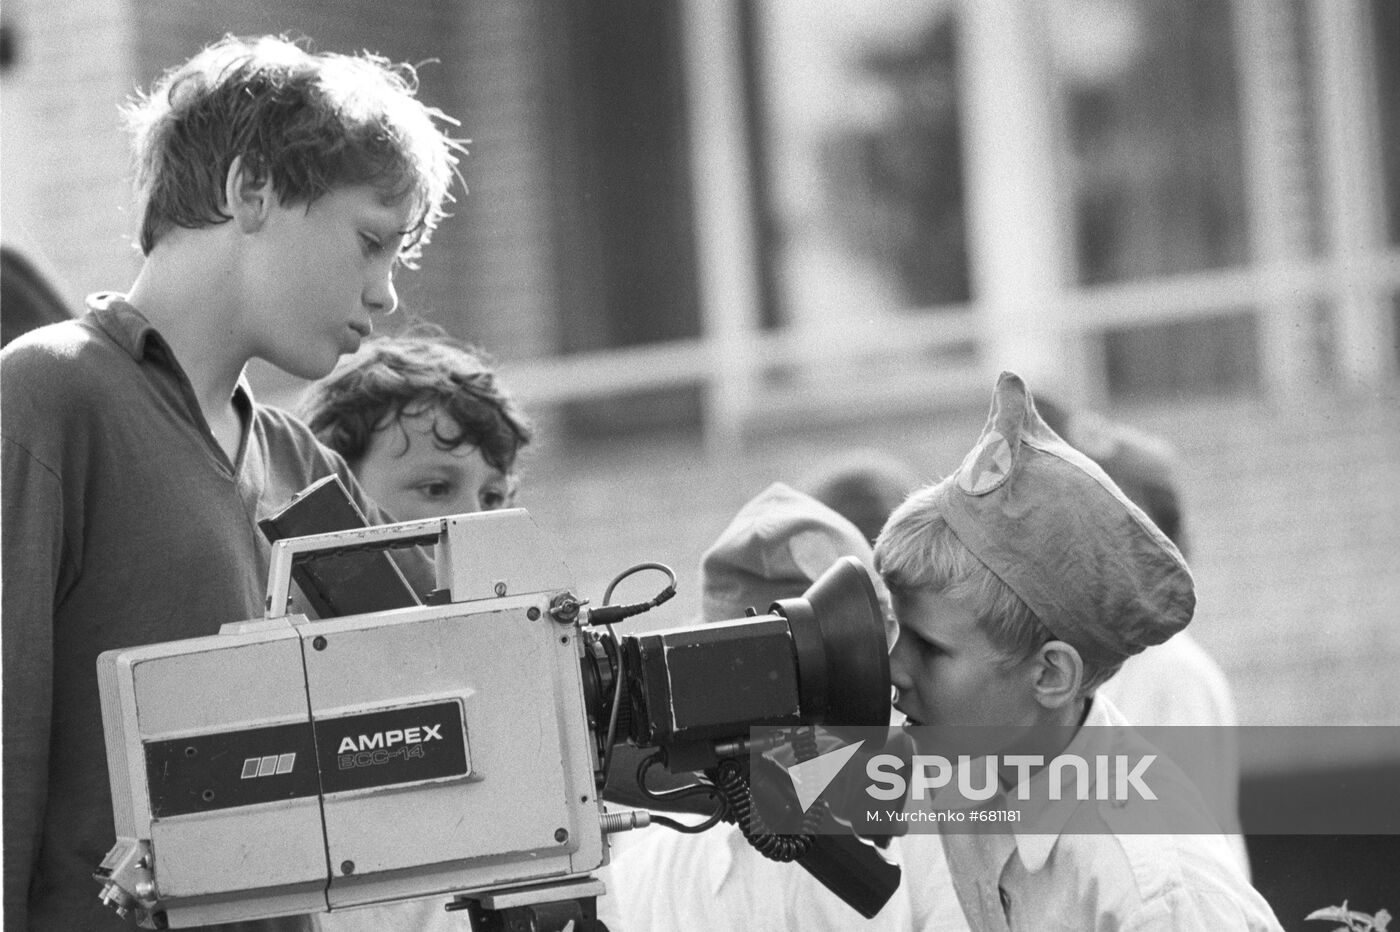 Young camera operators